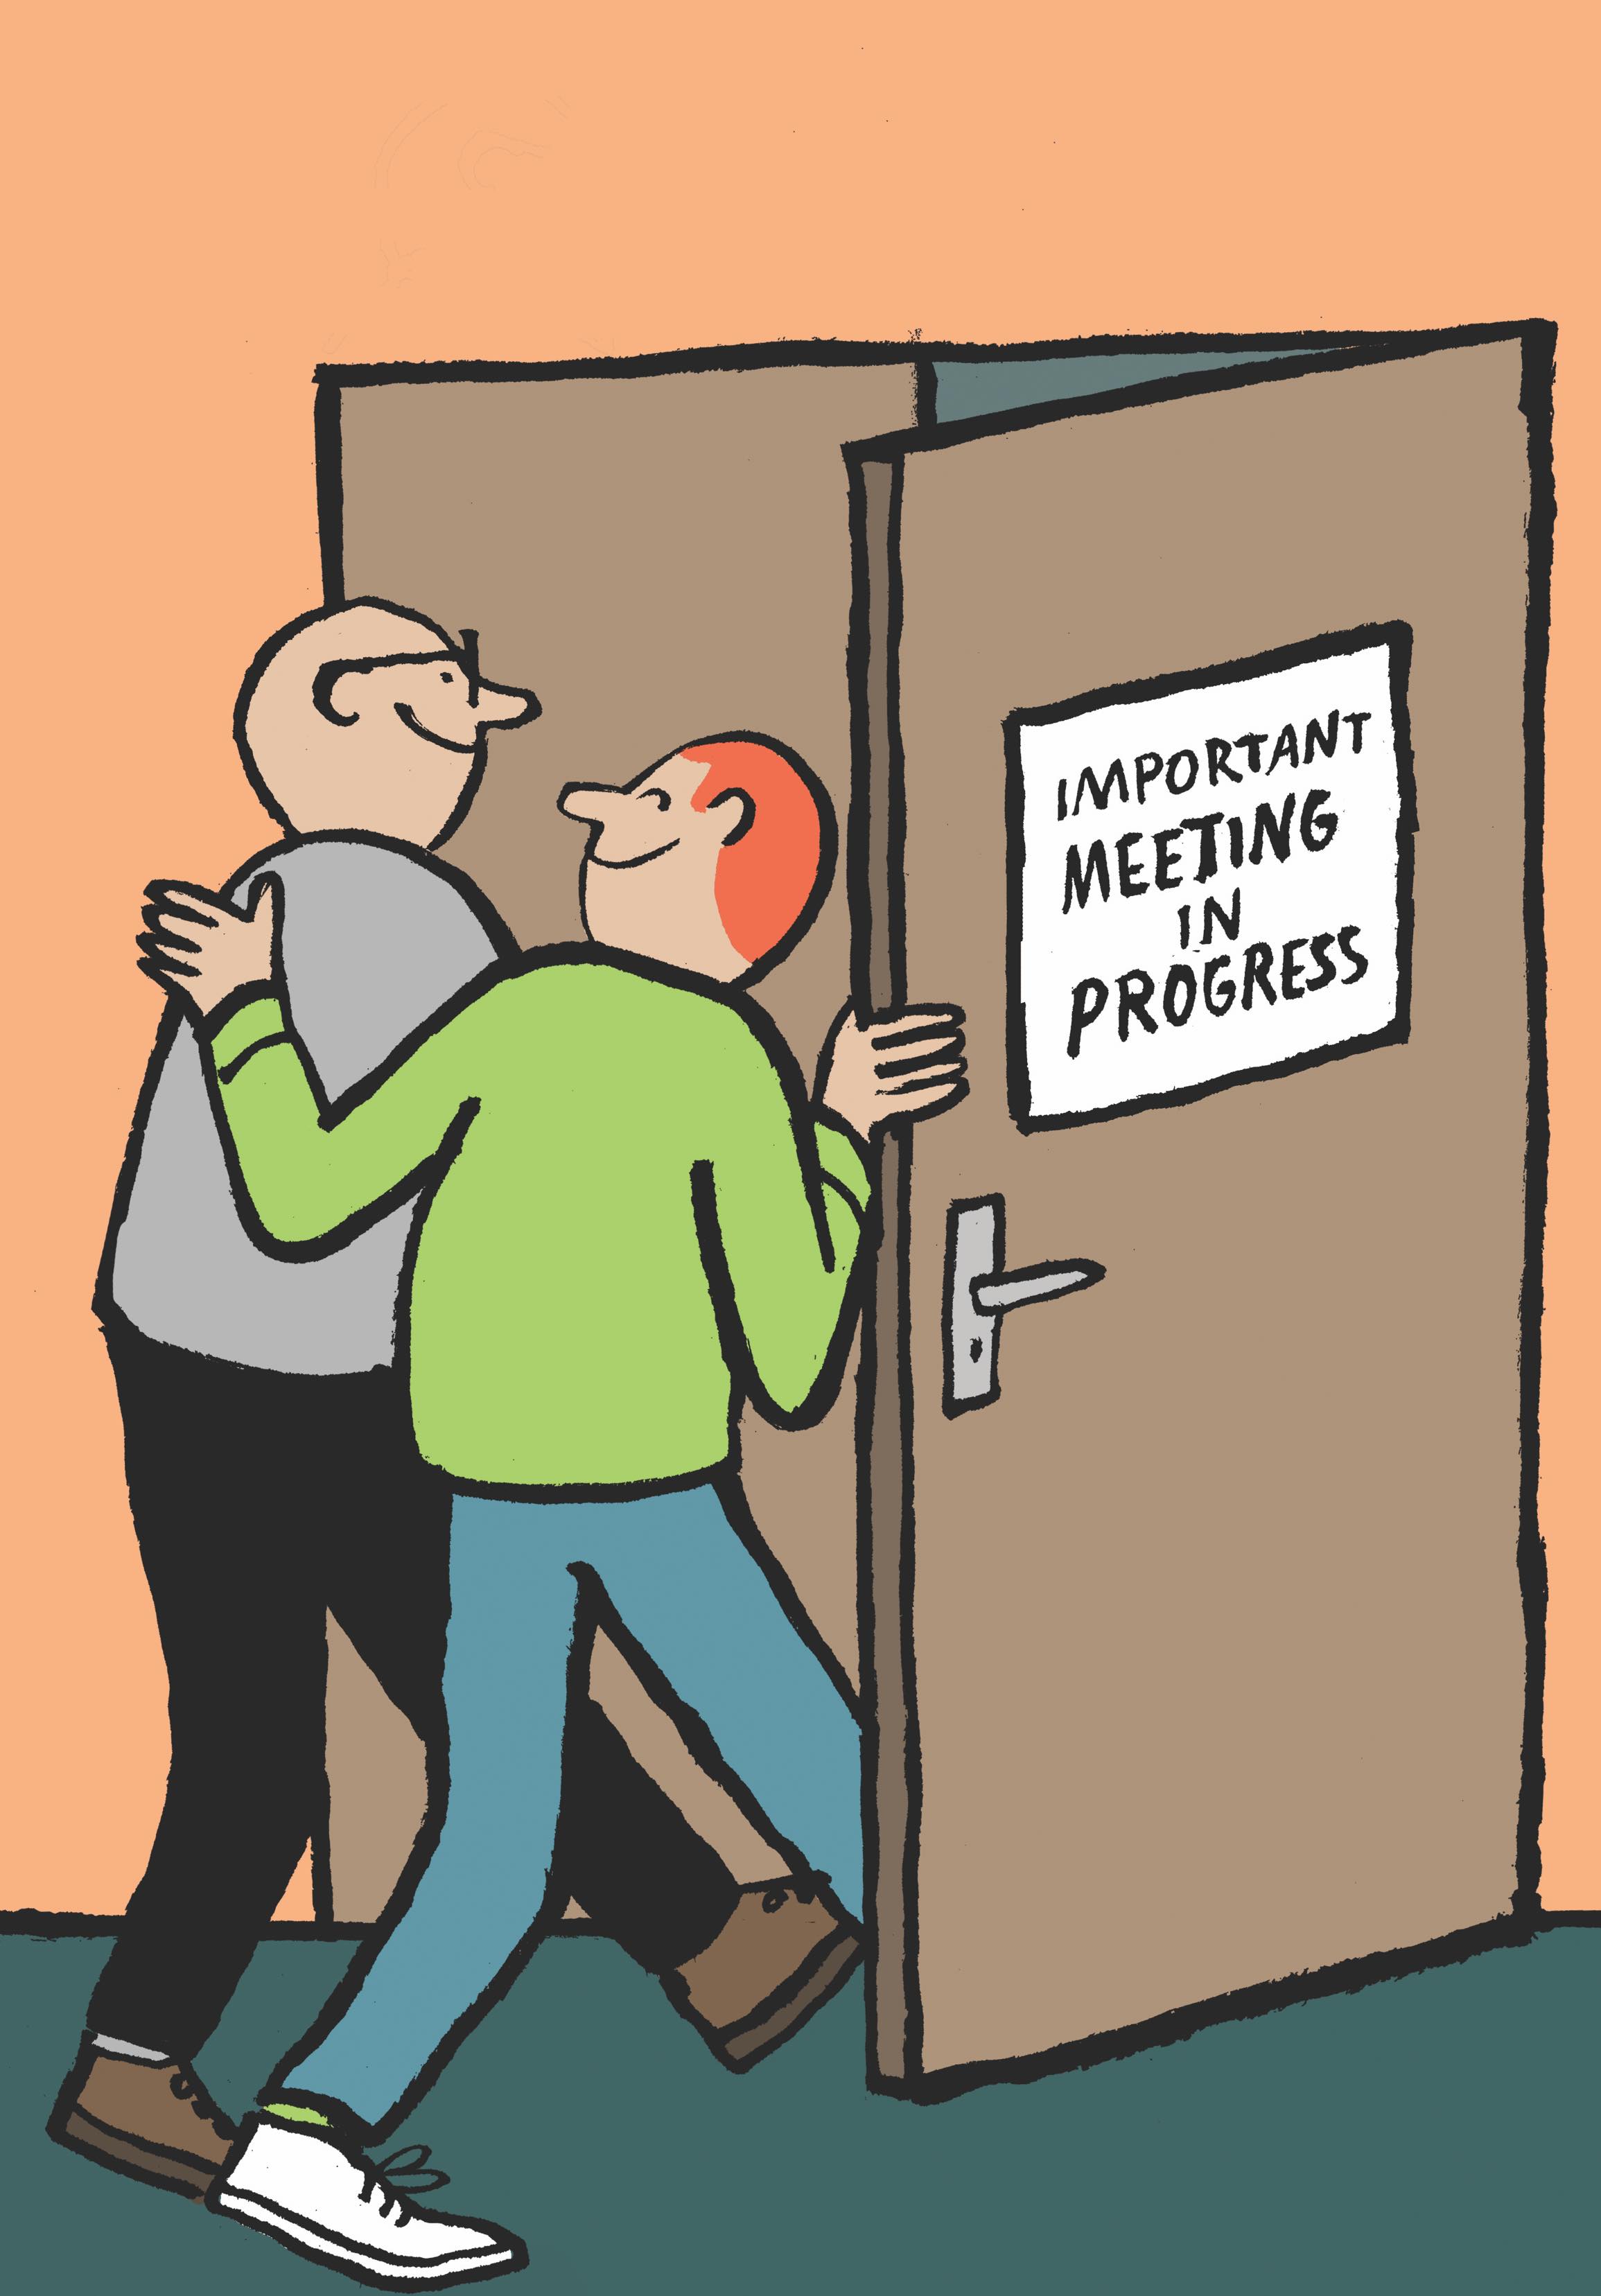 Eine Karikatur von zwei Männern, die einen Konferenzsaal betreten.